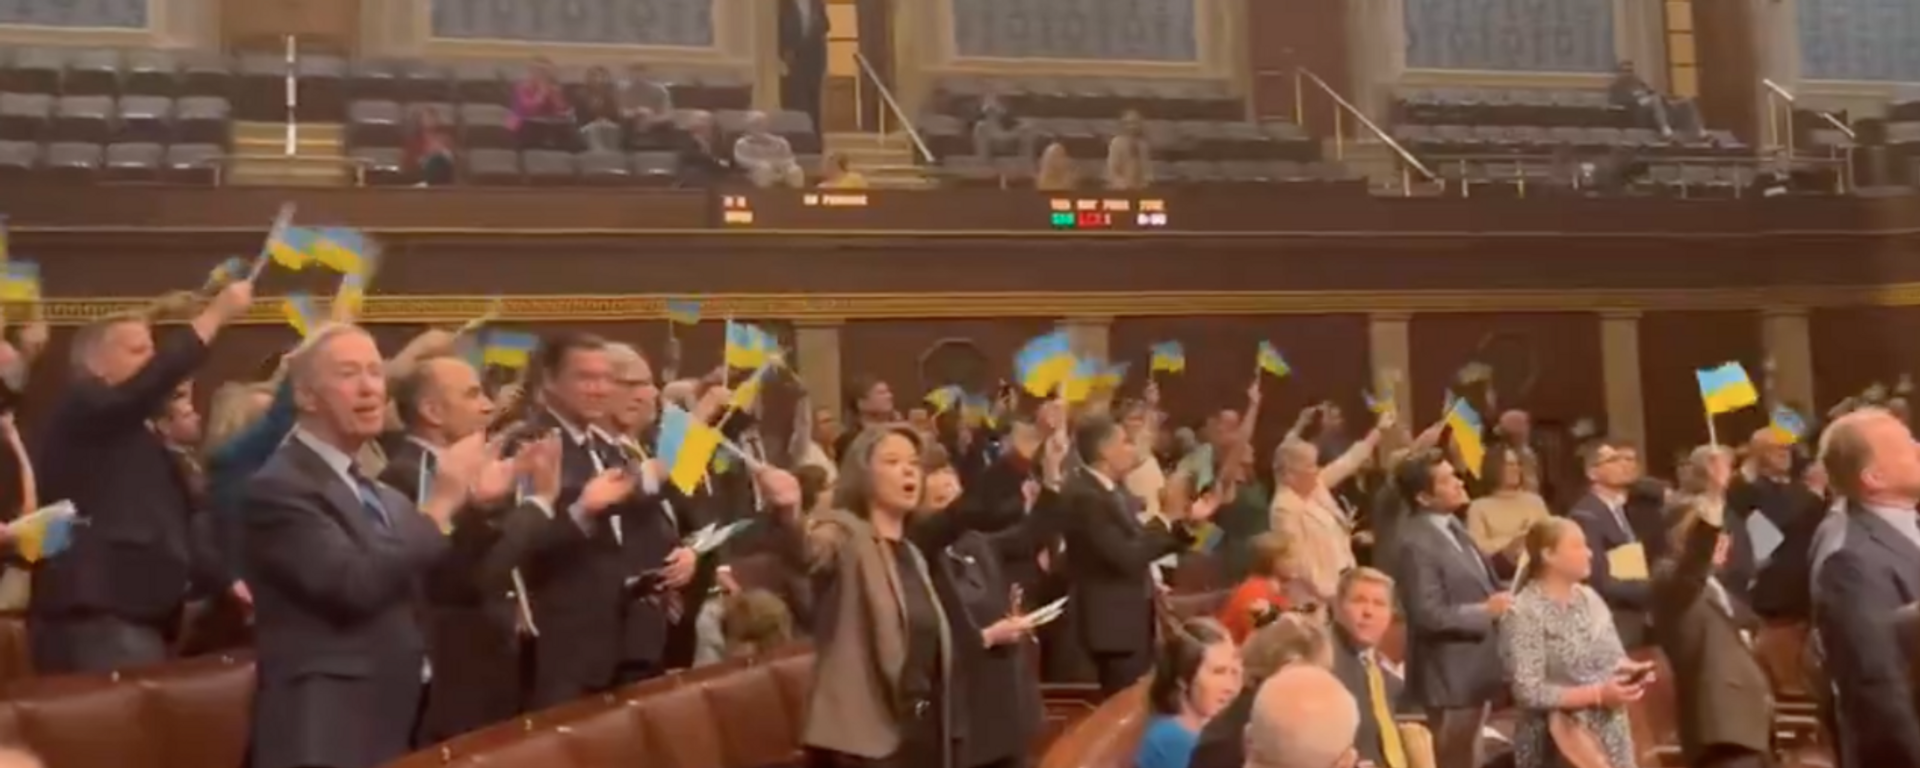 تصویری از ویدئویی که توسط نماینده توماس ماسی (R-KY) در پلتفرم رسانه اجتماعی X منتشر شده است، اعضای مجلس نمایندگان ایالات متحده را نشان می دهد که پرچم های اوکراین را پس از تصویب لایحه کمک های نظامی گسترده به این کشور به اهتزاز در می آورند.  - اسپوتنیک بین المللی، 1920، 2024/04/24